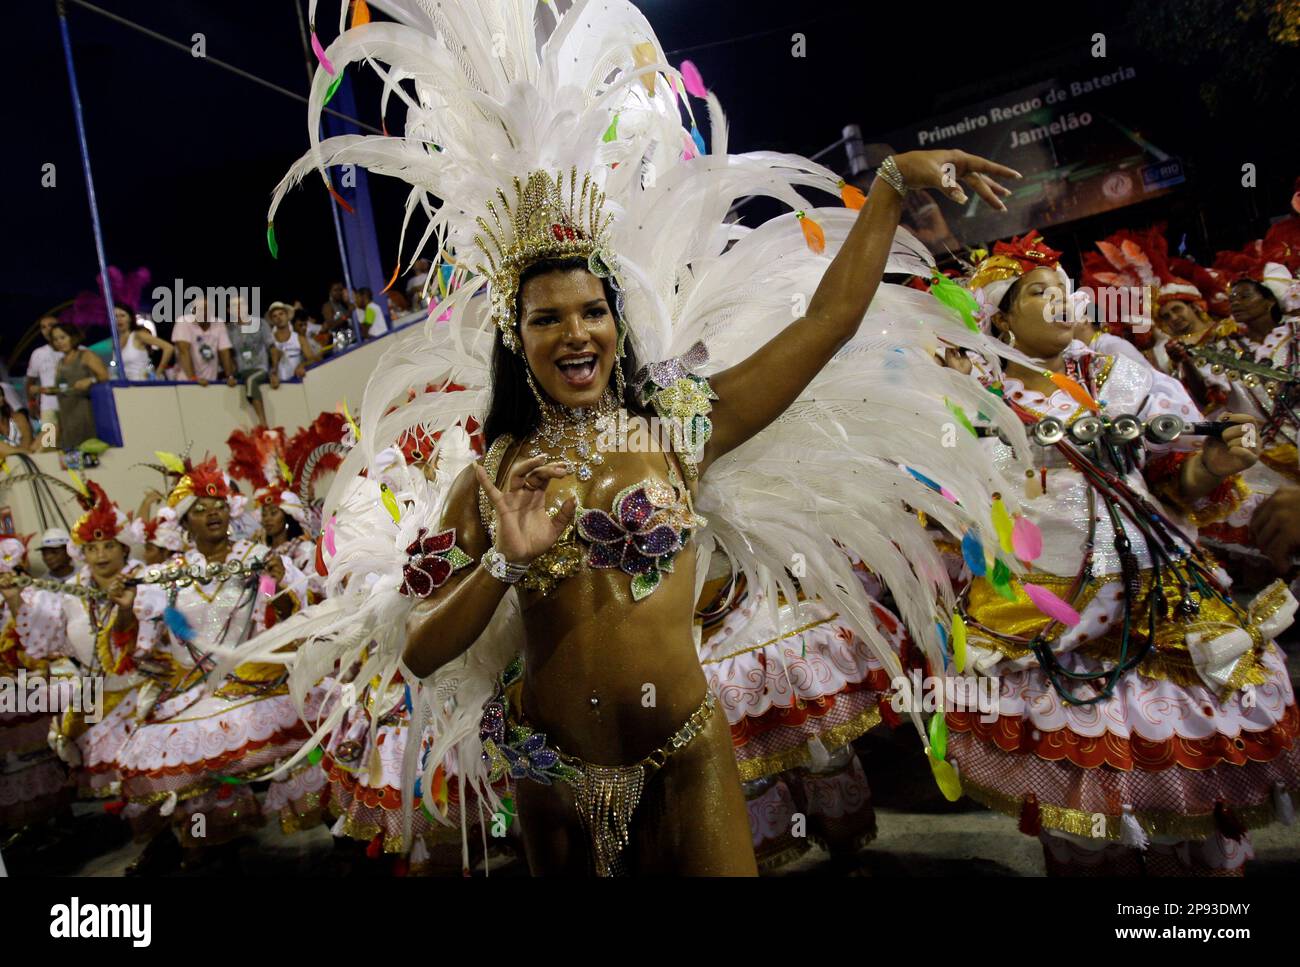 Juliane Almeida, queen of the drums' section of Viradouro samba school dances during carnival parade at the sambodrome, in Rio de Janeiro, Tuesday, Feb. 24, 2009. (AP Photo/Natacha Pisarenko) Stock Photo